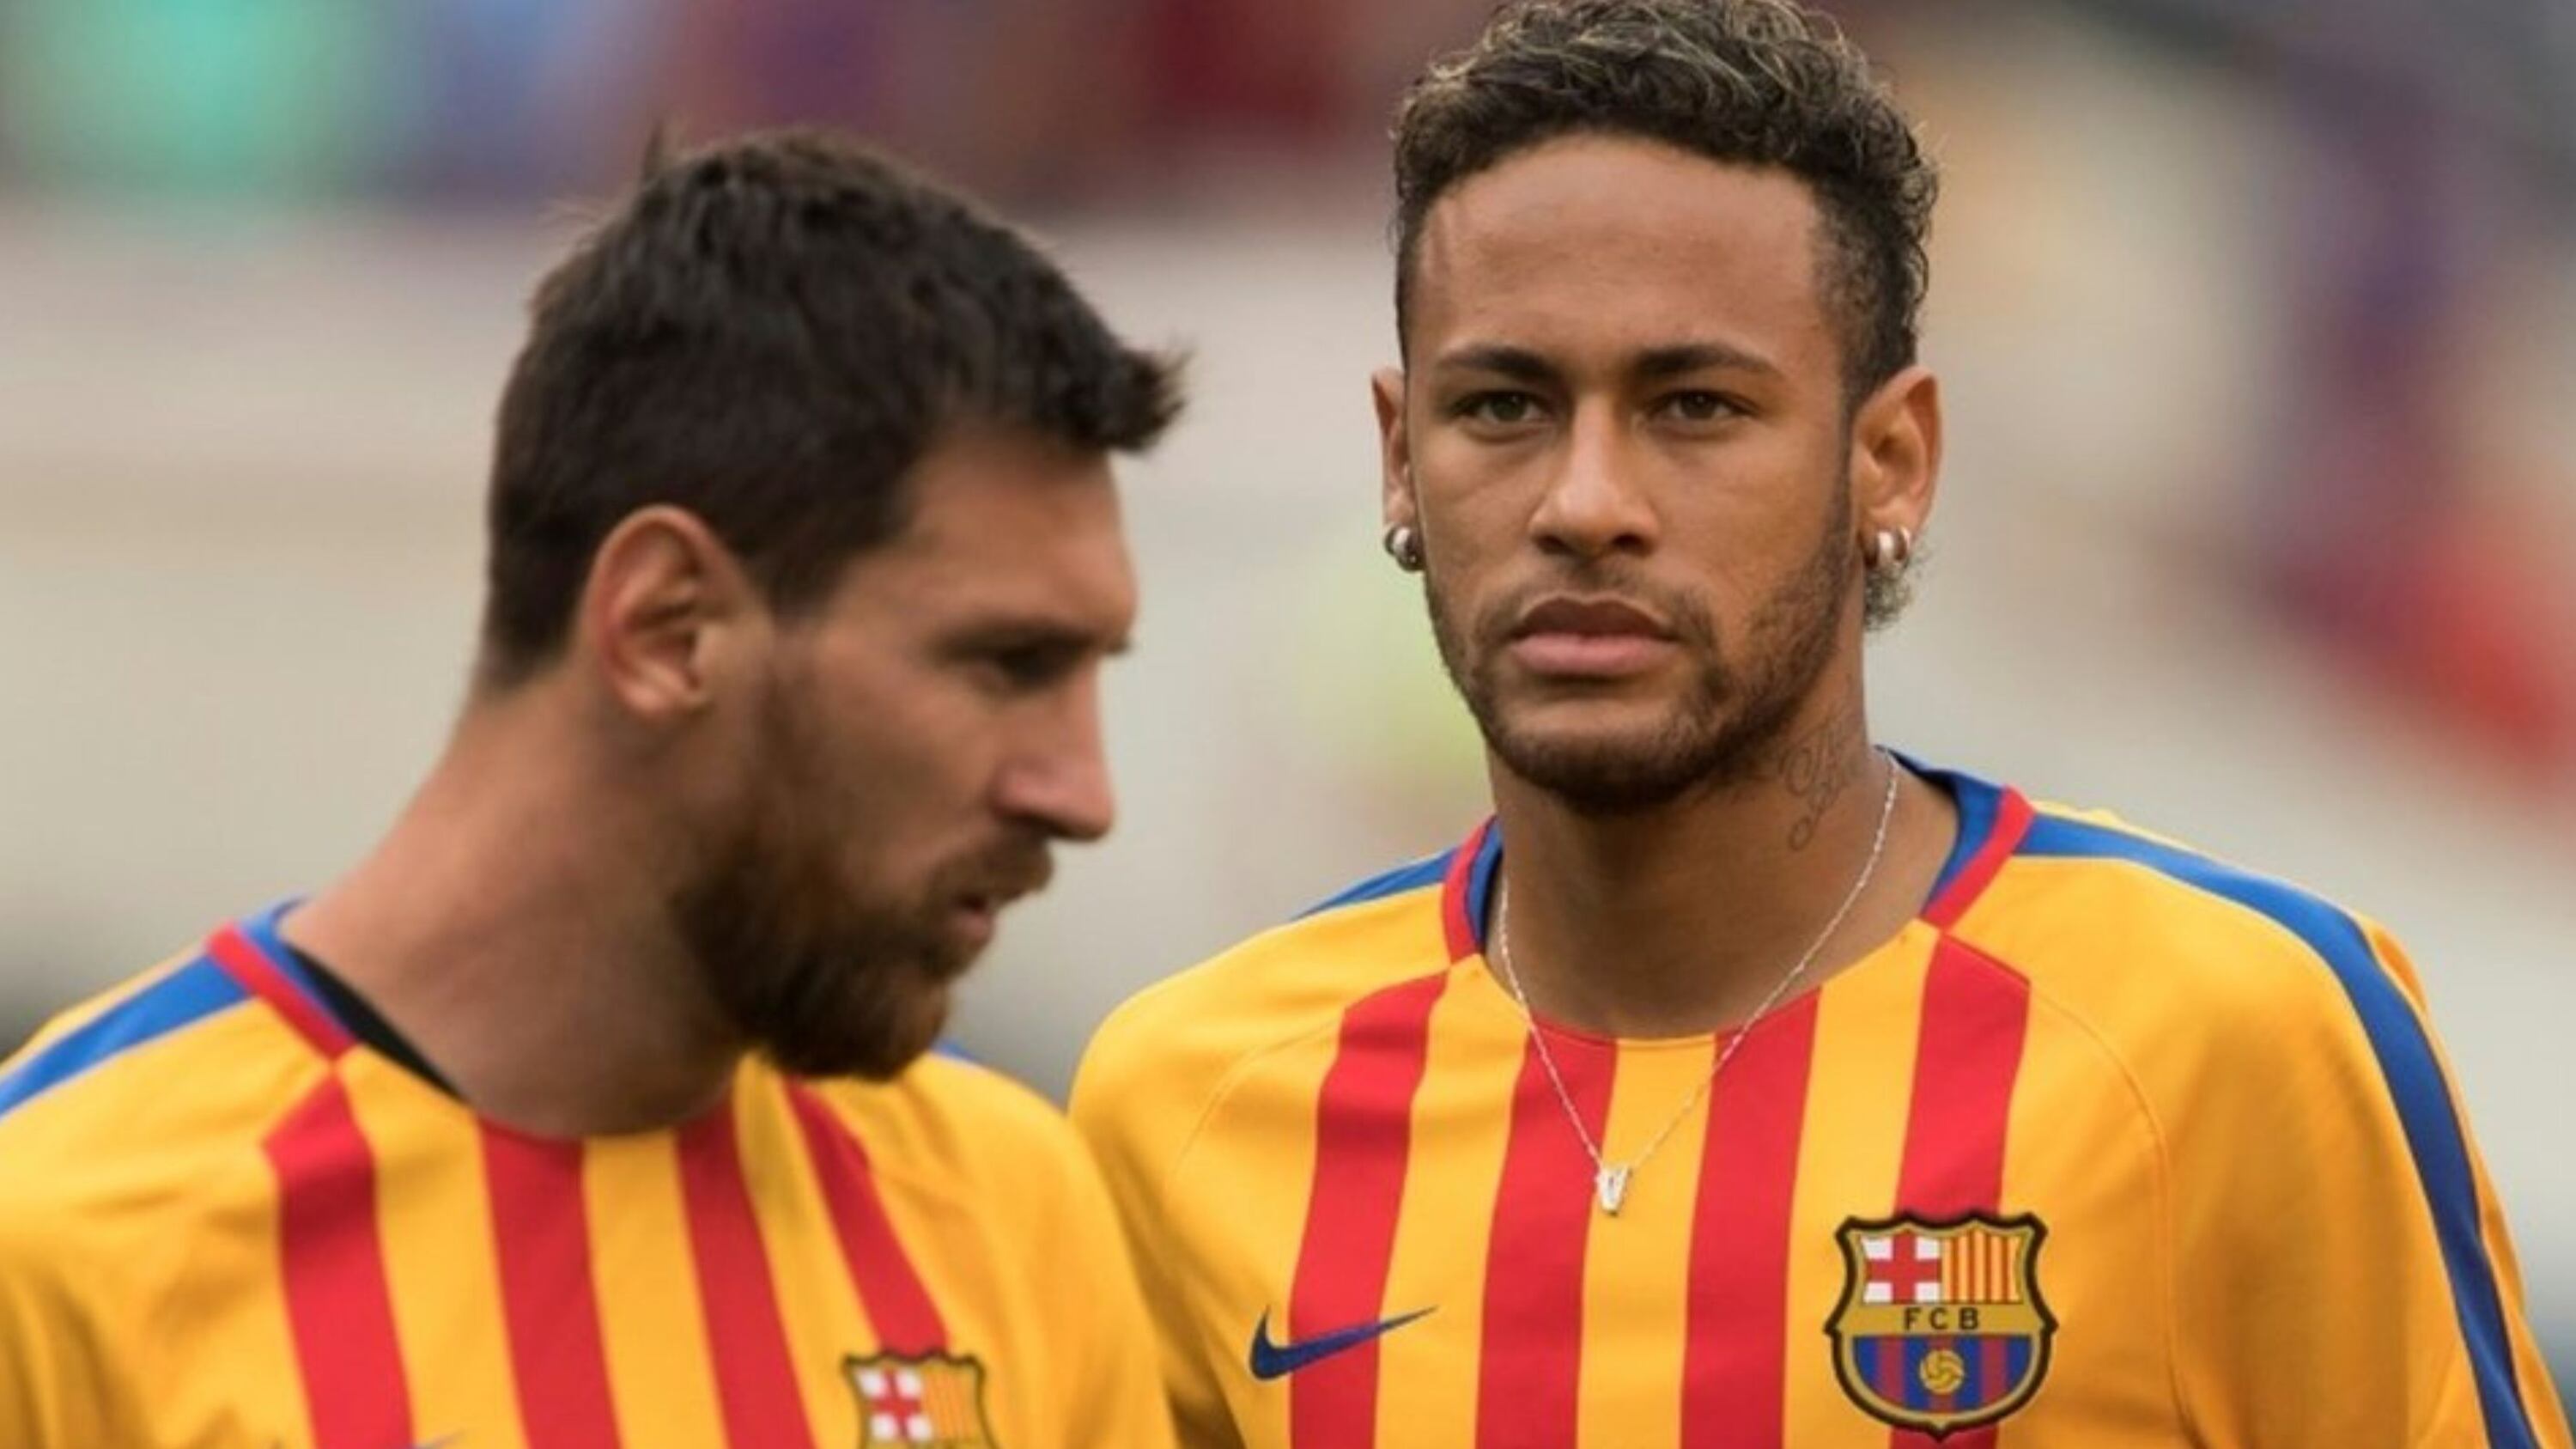 Mientras Neymar lo admira, el jugador que sintió celos de Messi y se fue por atrás